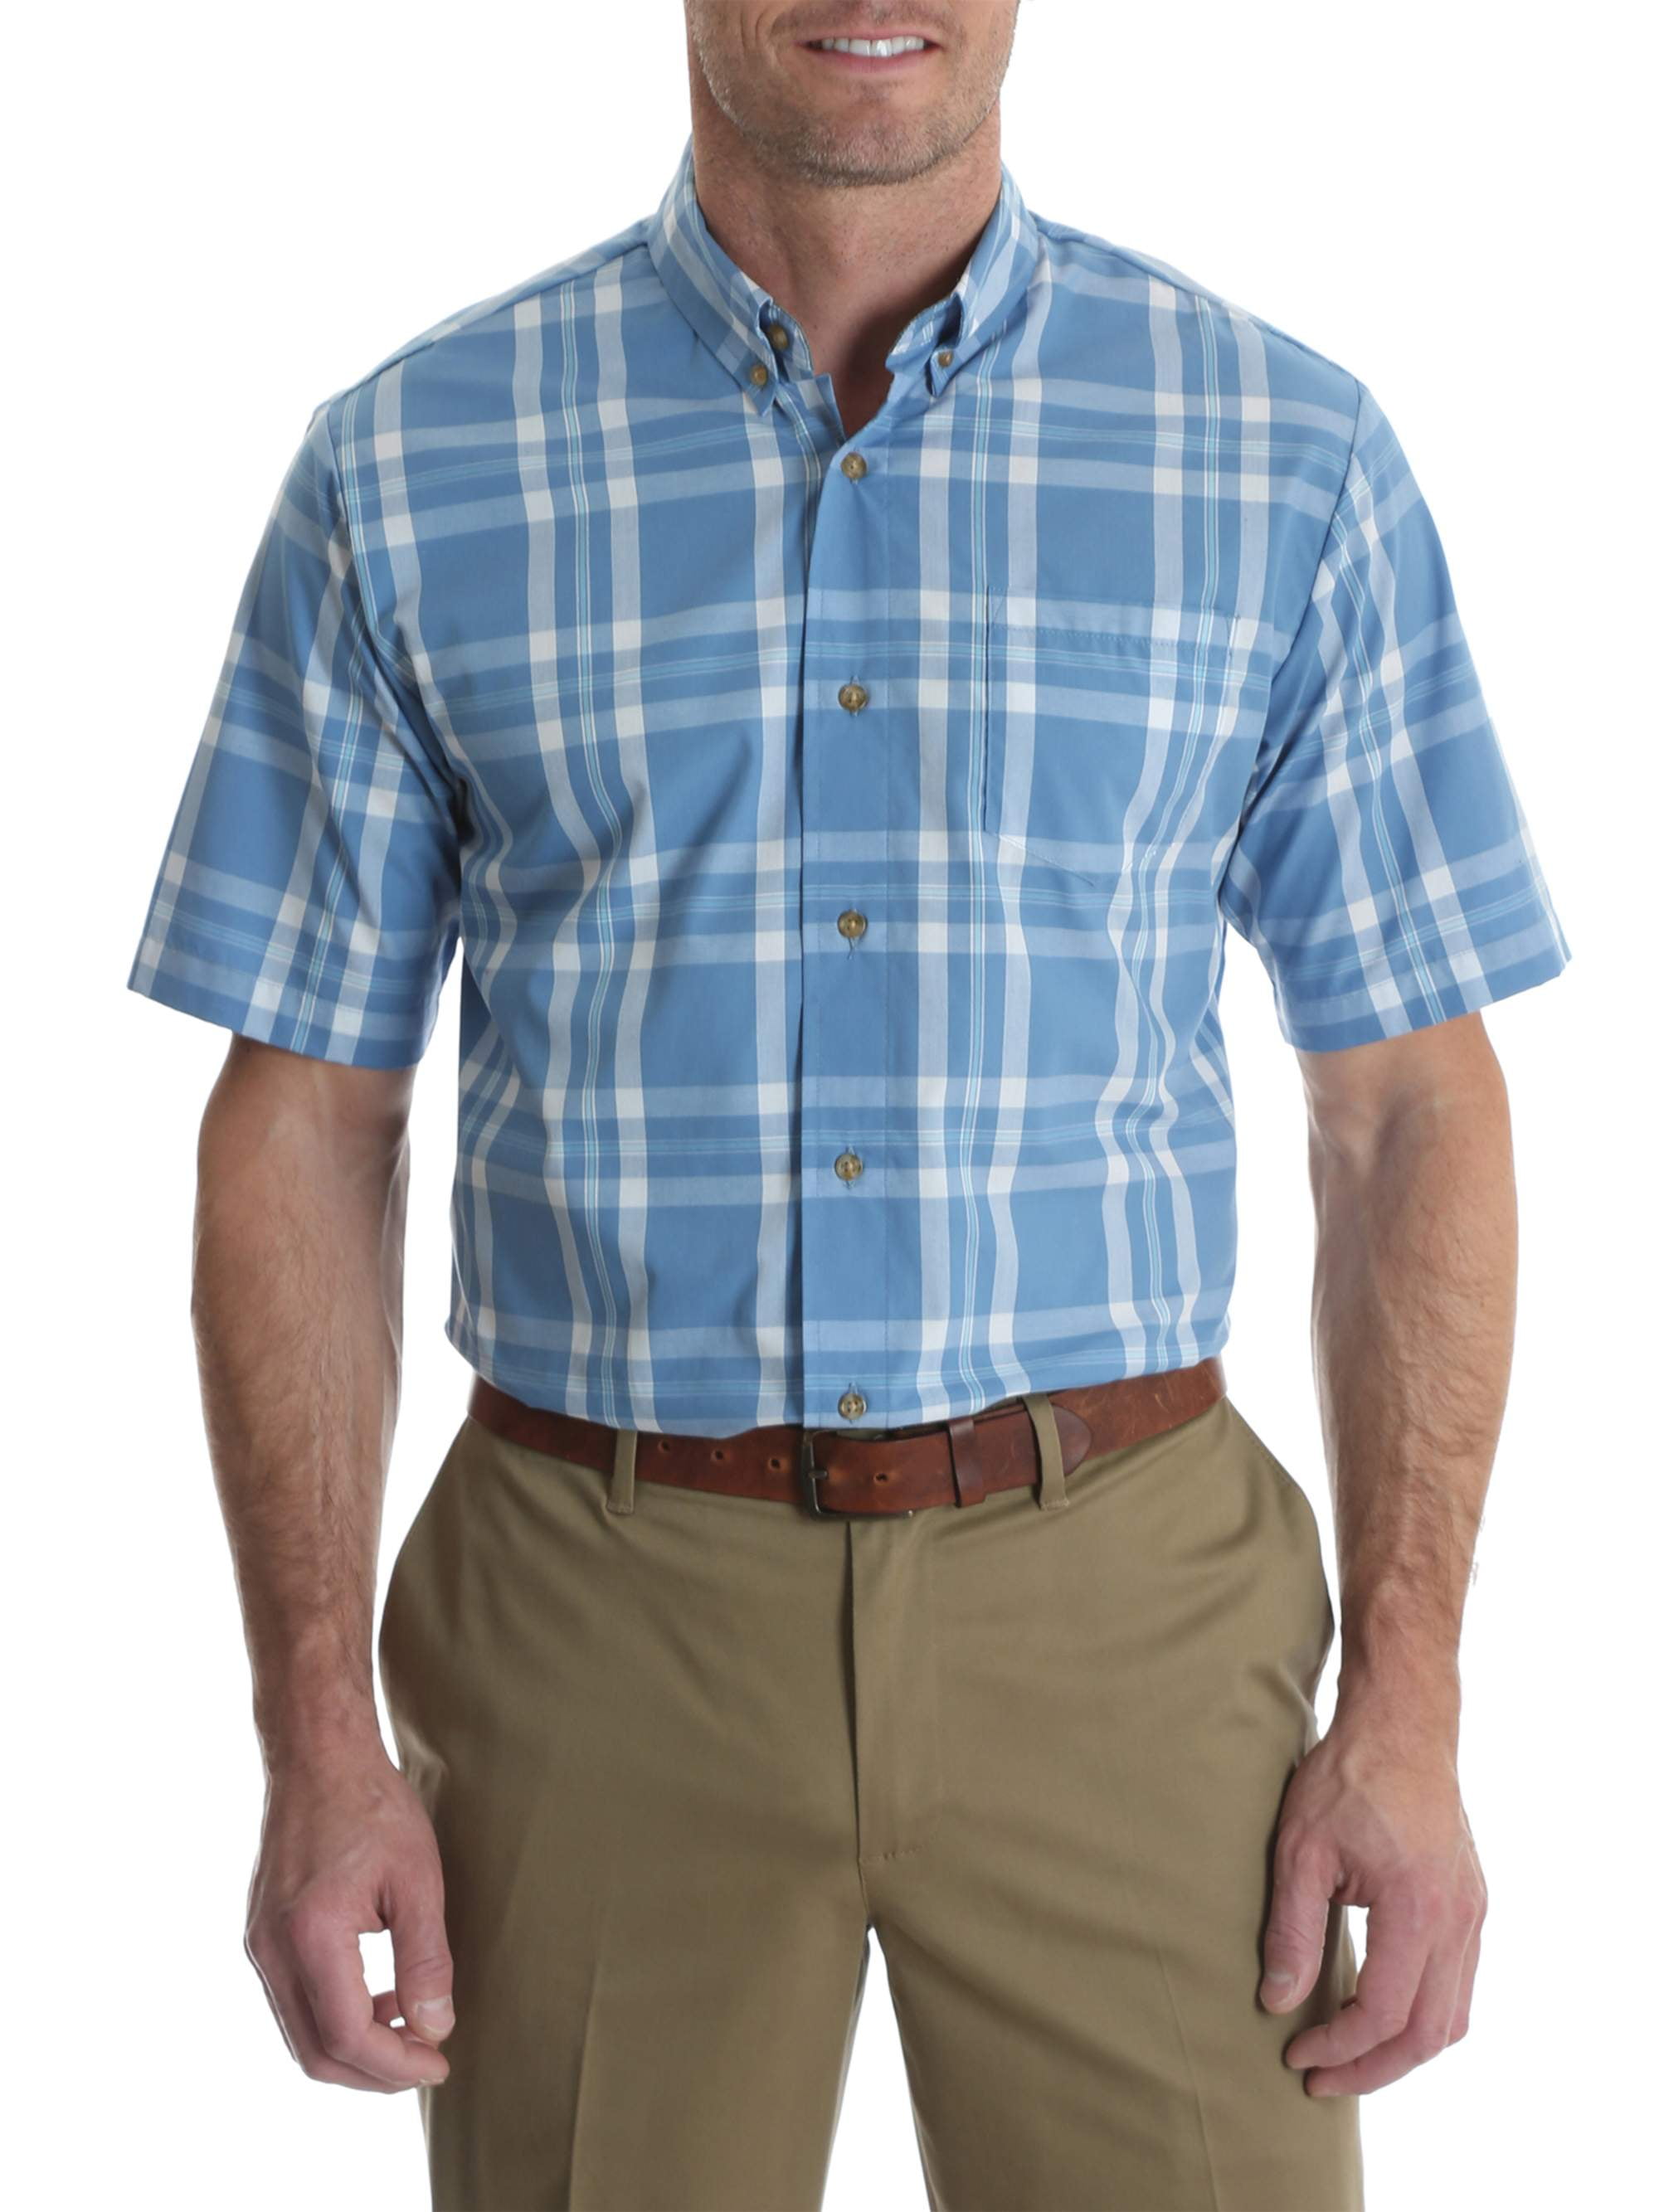 Wrangler Tall men's short sleeve wrinkle resist plaid shirt - Walmart.com